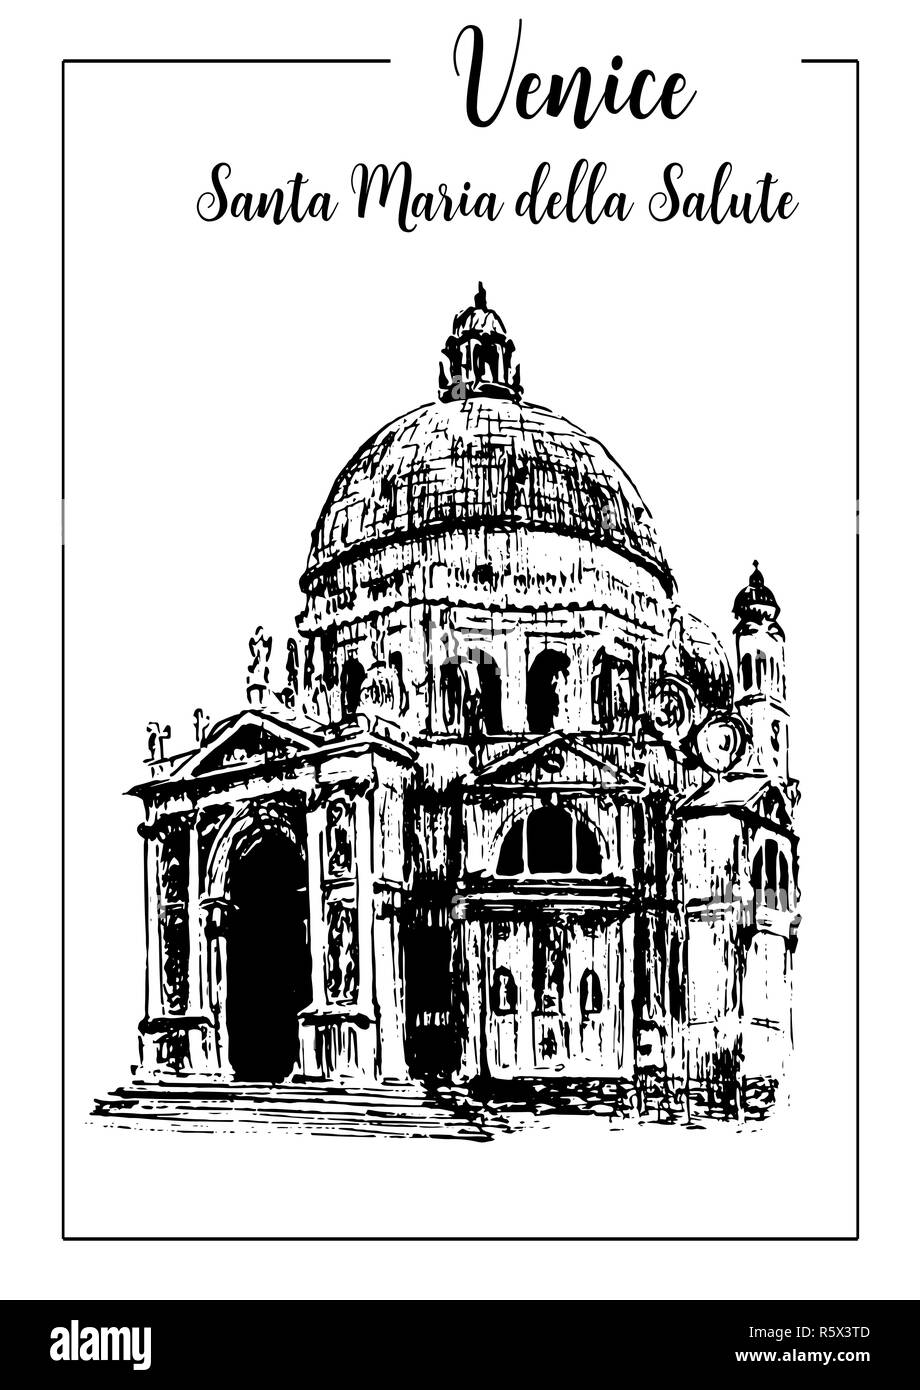 Santa Maria della Salute.Venise. croquis vecteur Banque D'Images